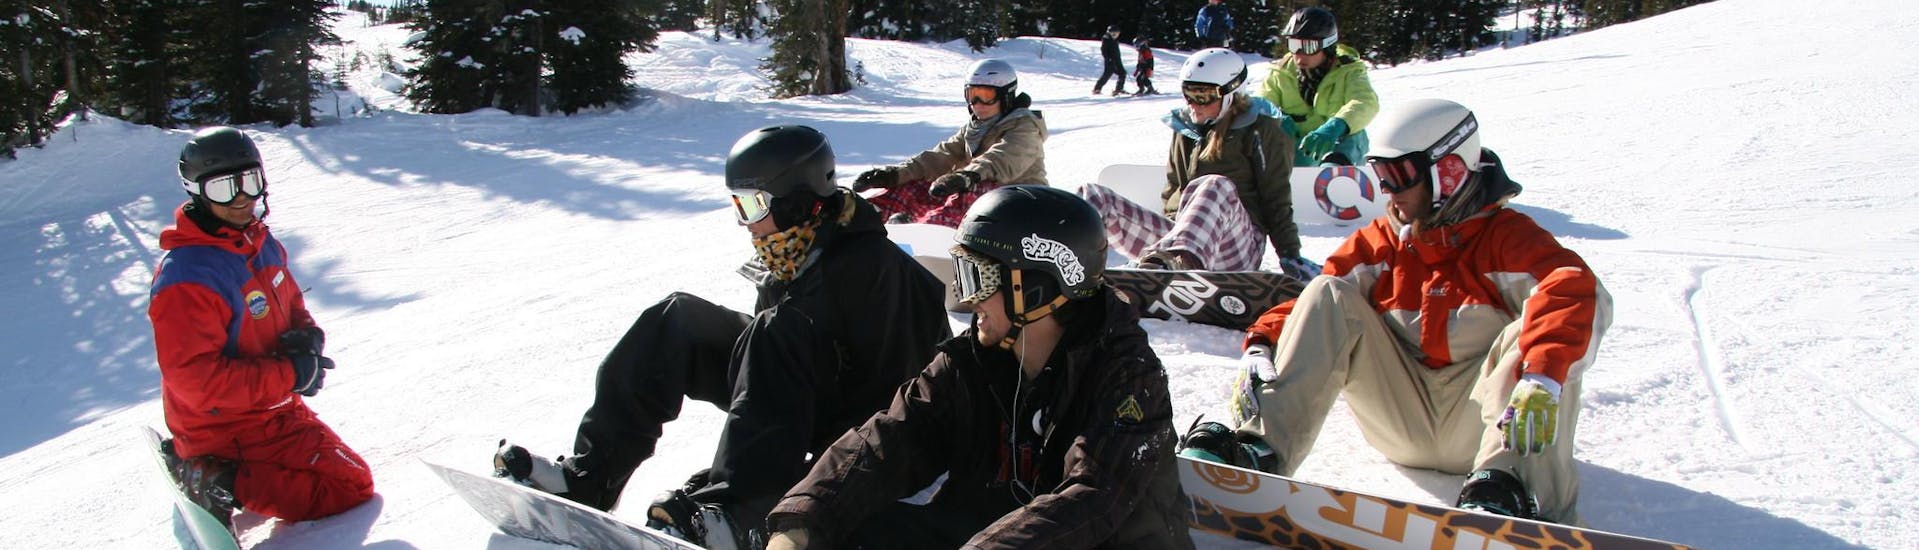 Groep snowboarders die samen plezier hebben tijdens een snowboardles voor beginners